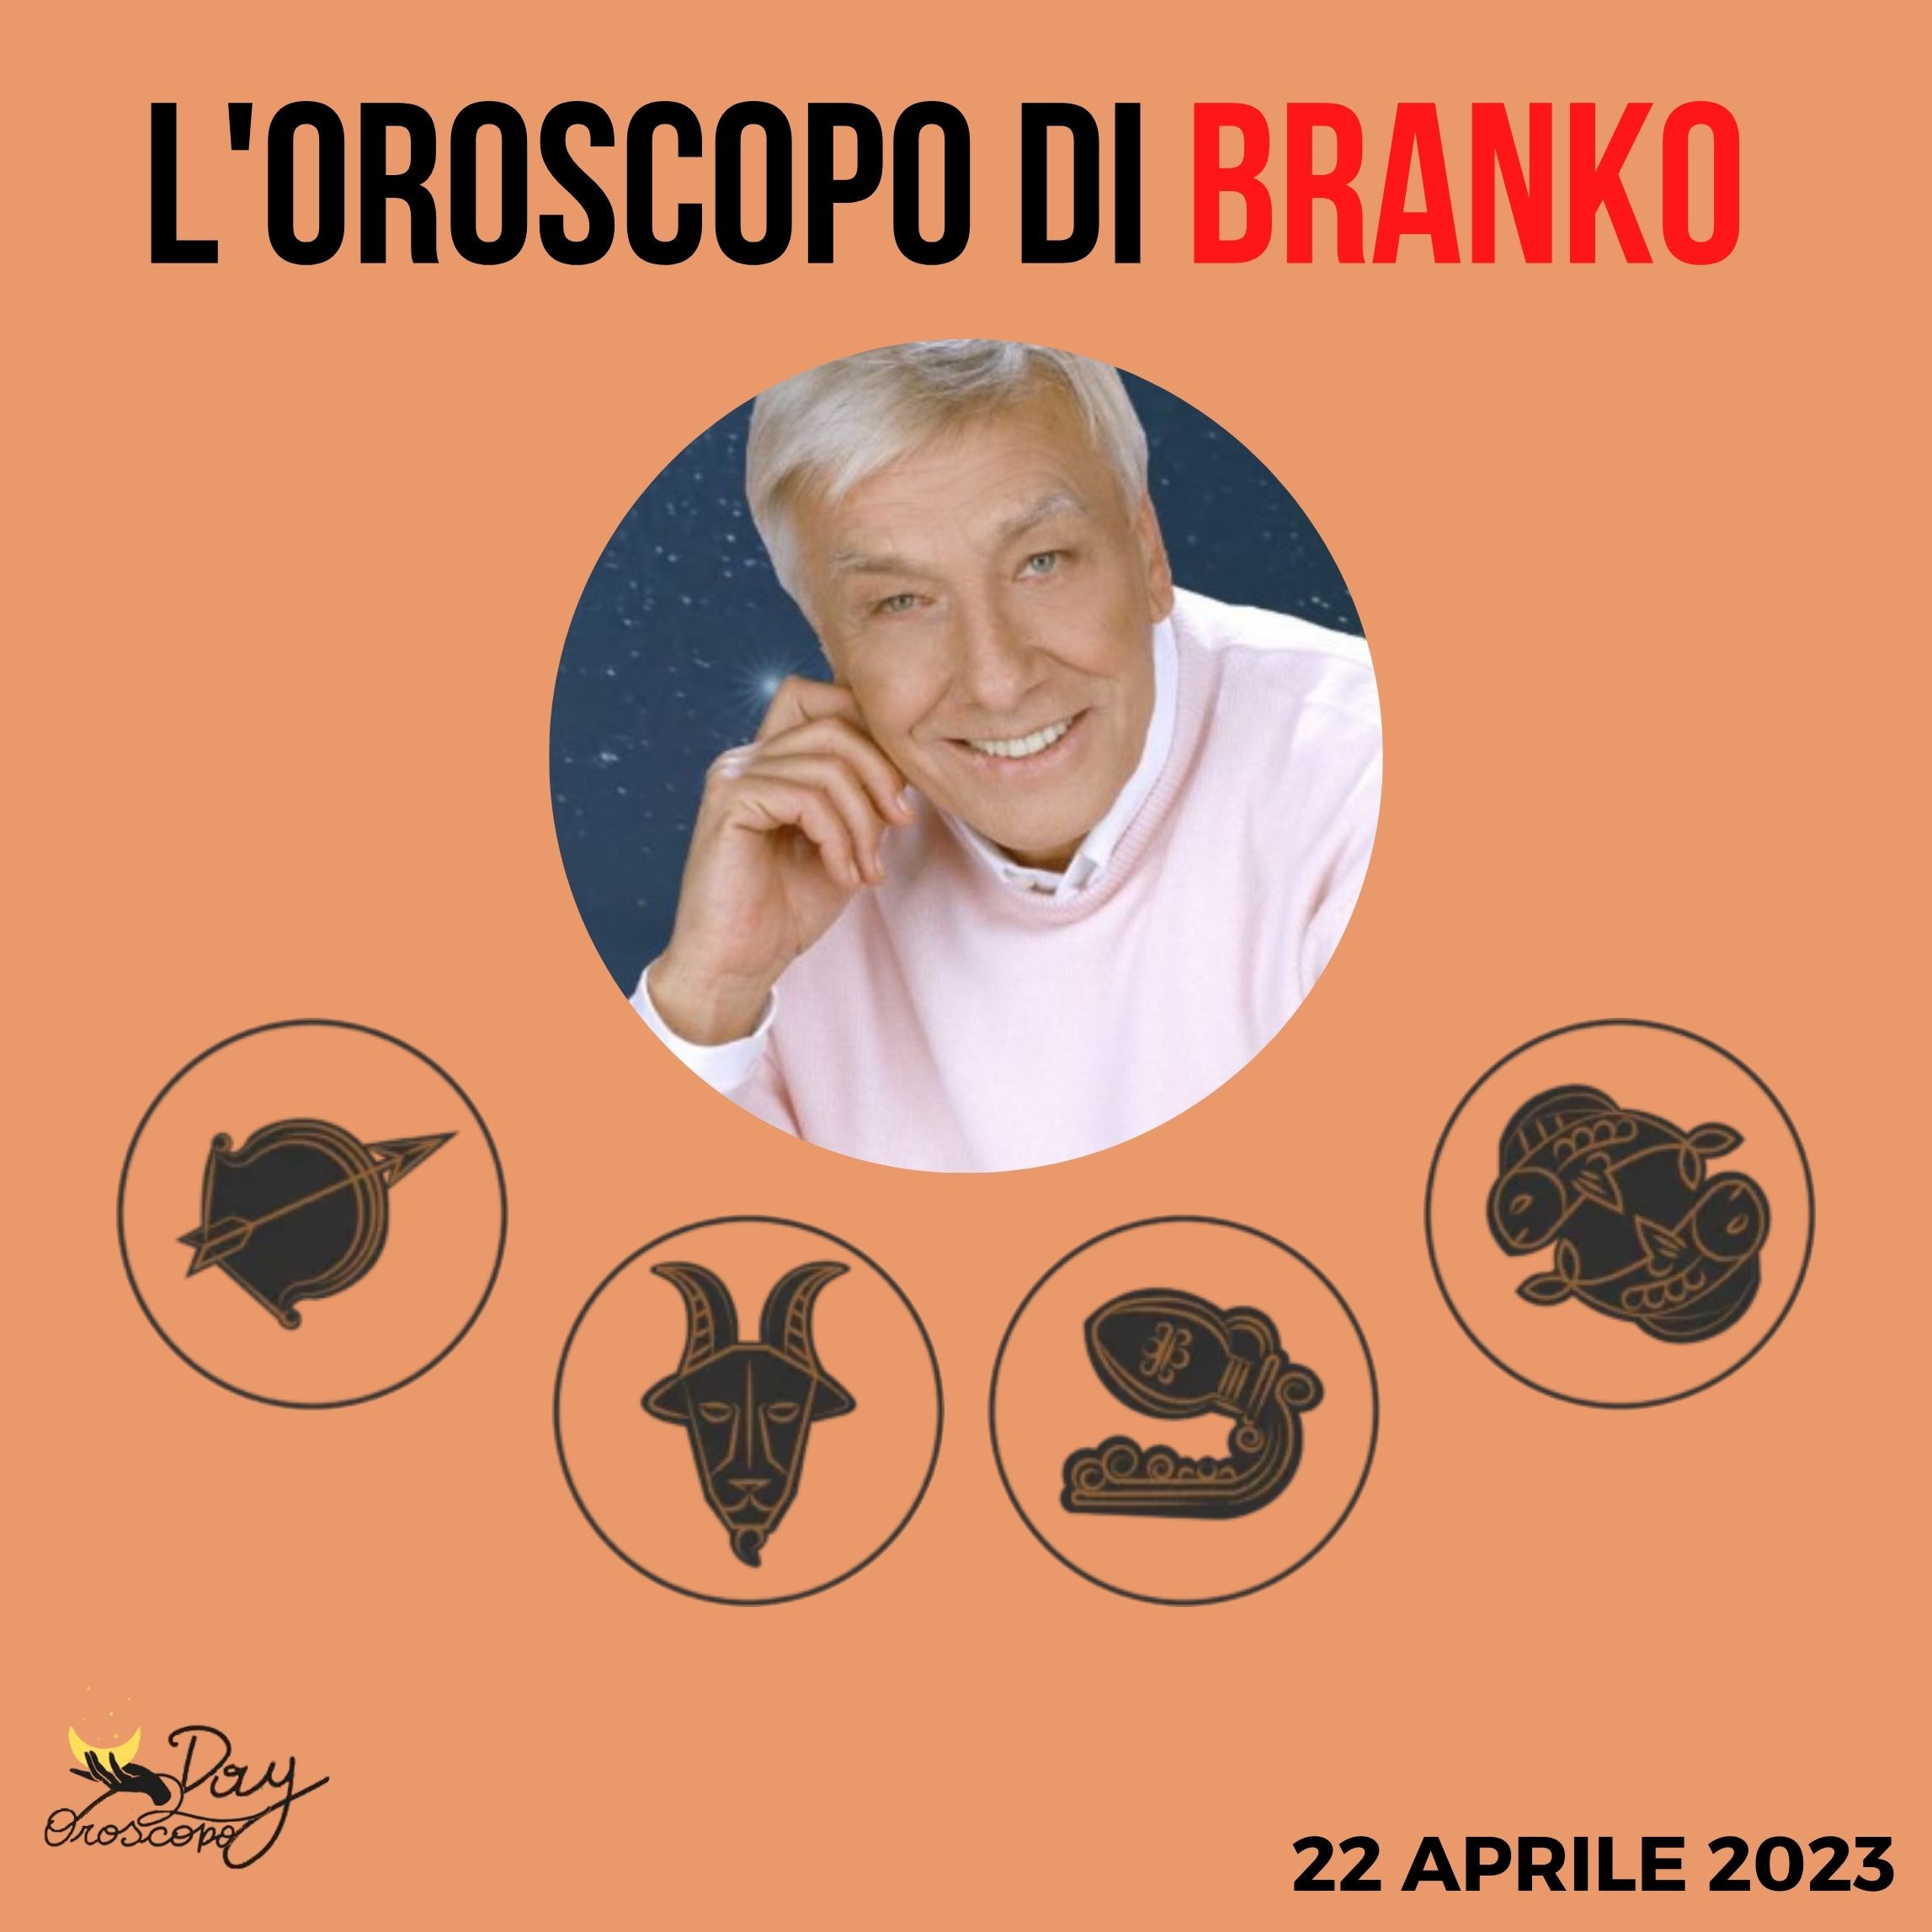 Oroscopo oggi domani Branko 22 aprile Sagittario Capricorno Acquario Pesci